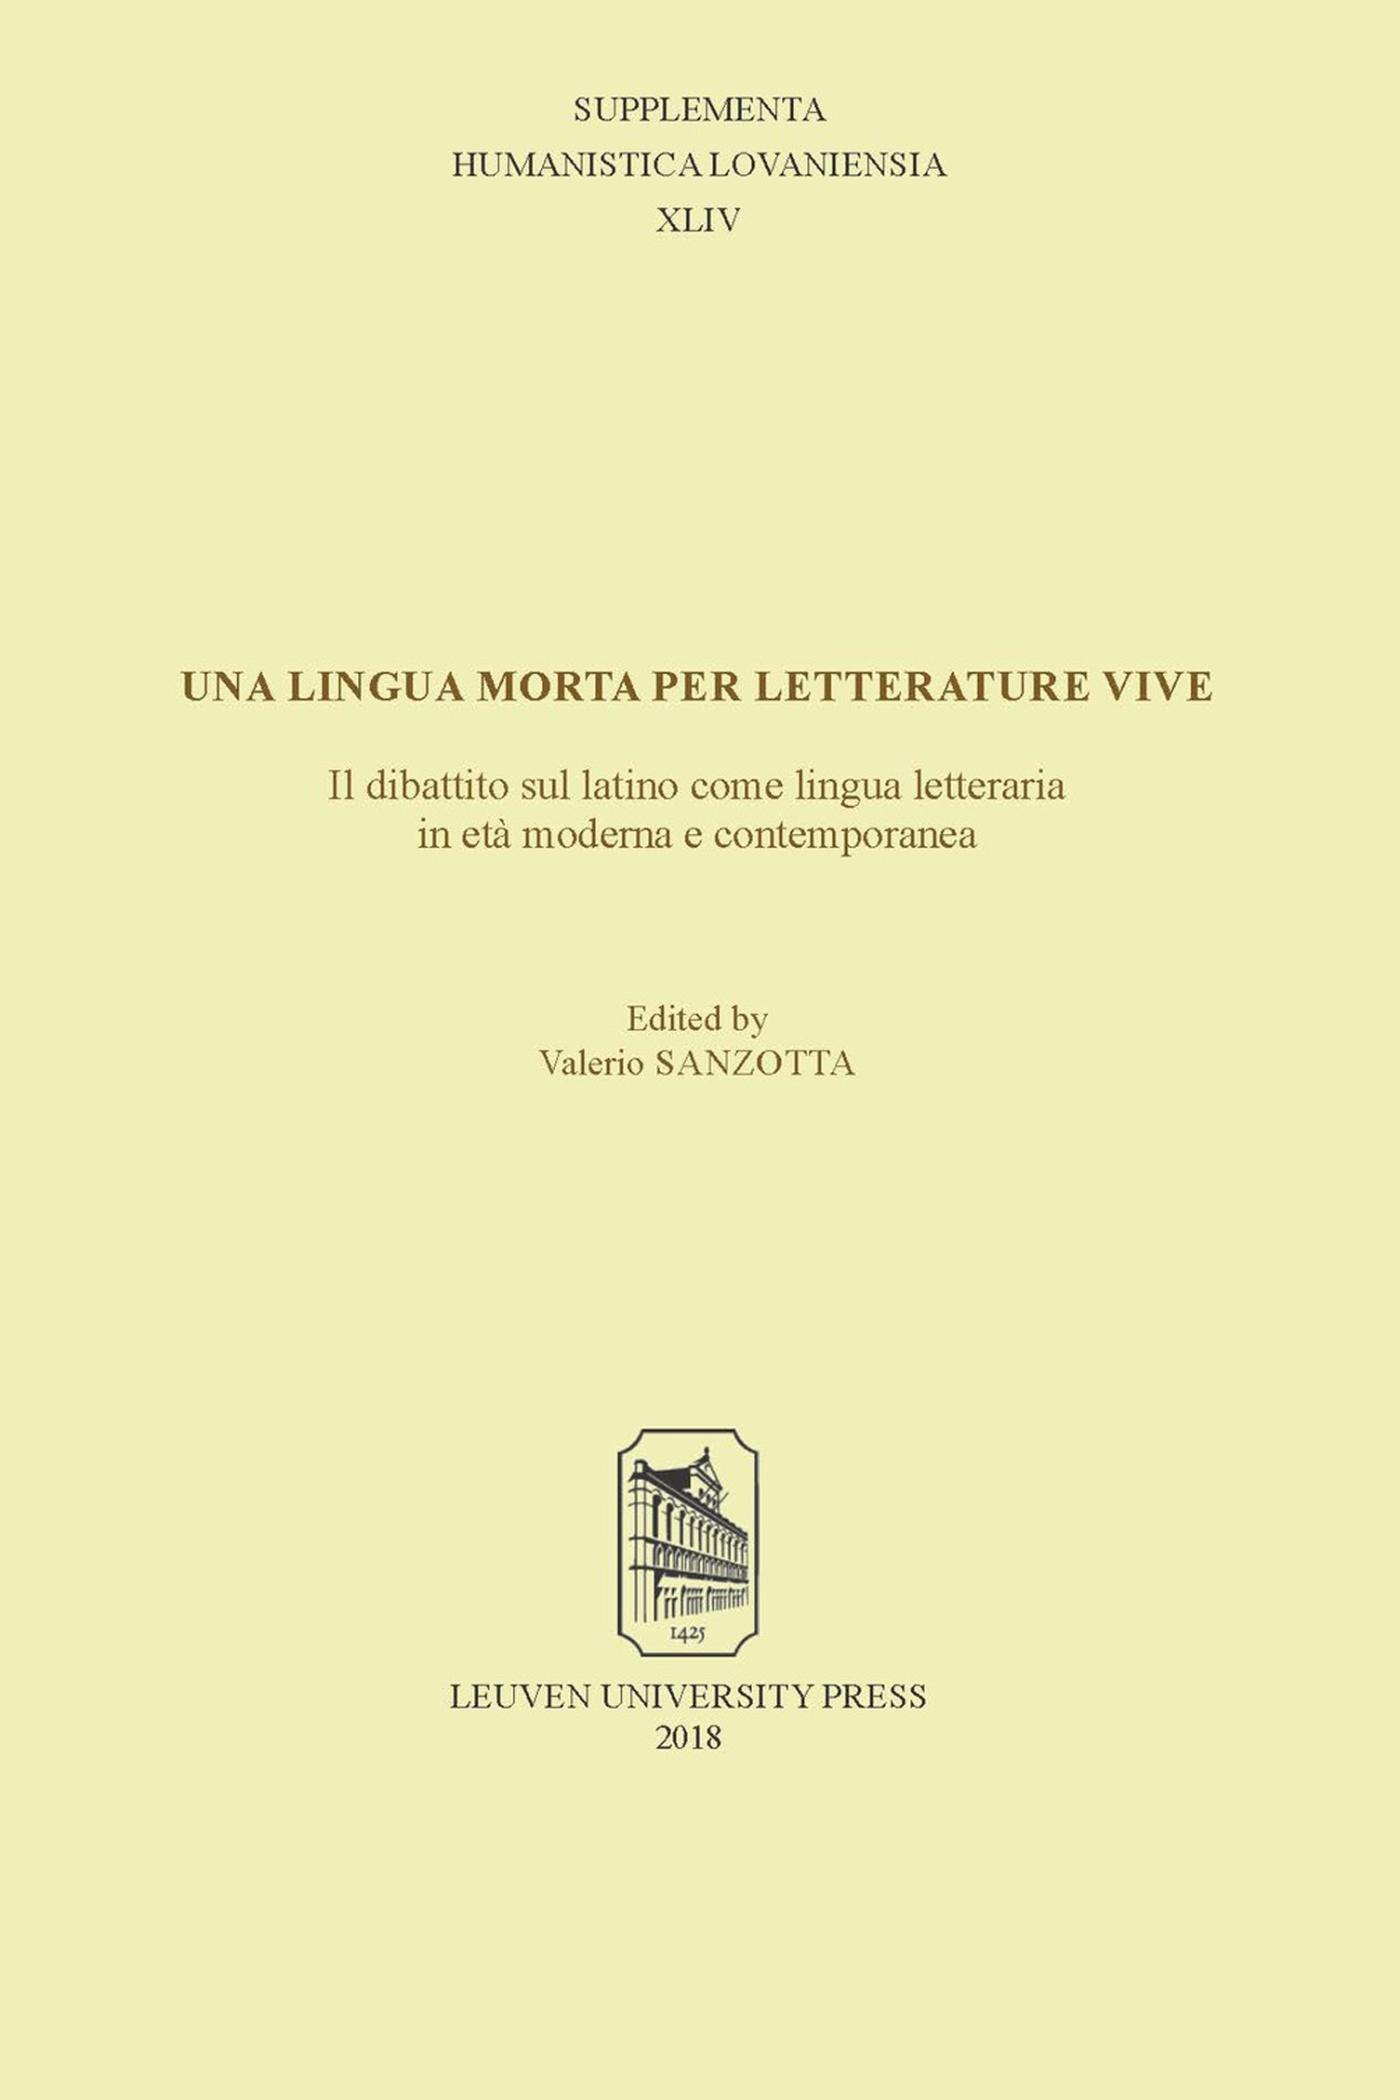 Una lingua morta per letterature vive: il dibattito sul latino come lingua letteraria in età moderna (Ebook)